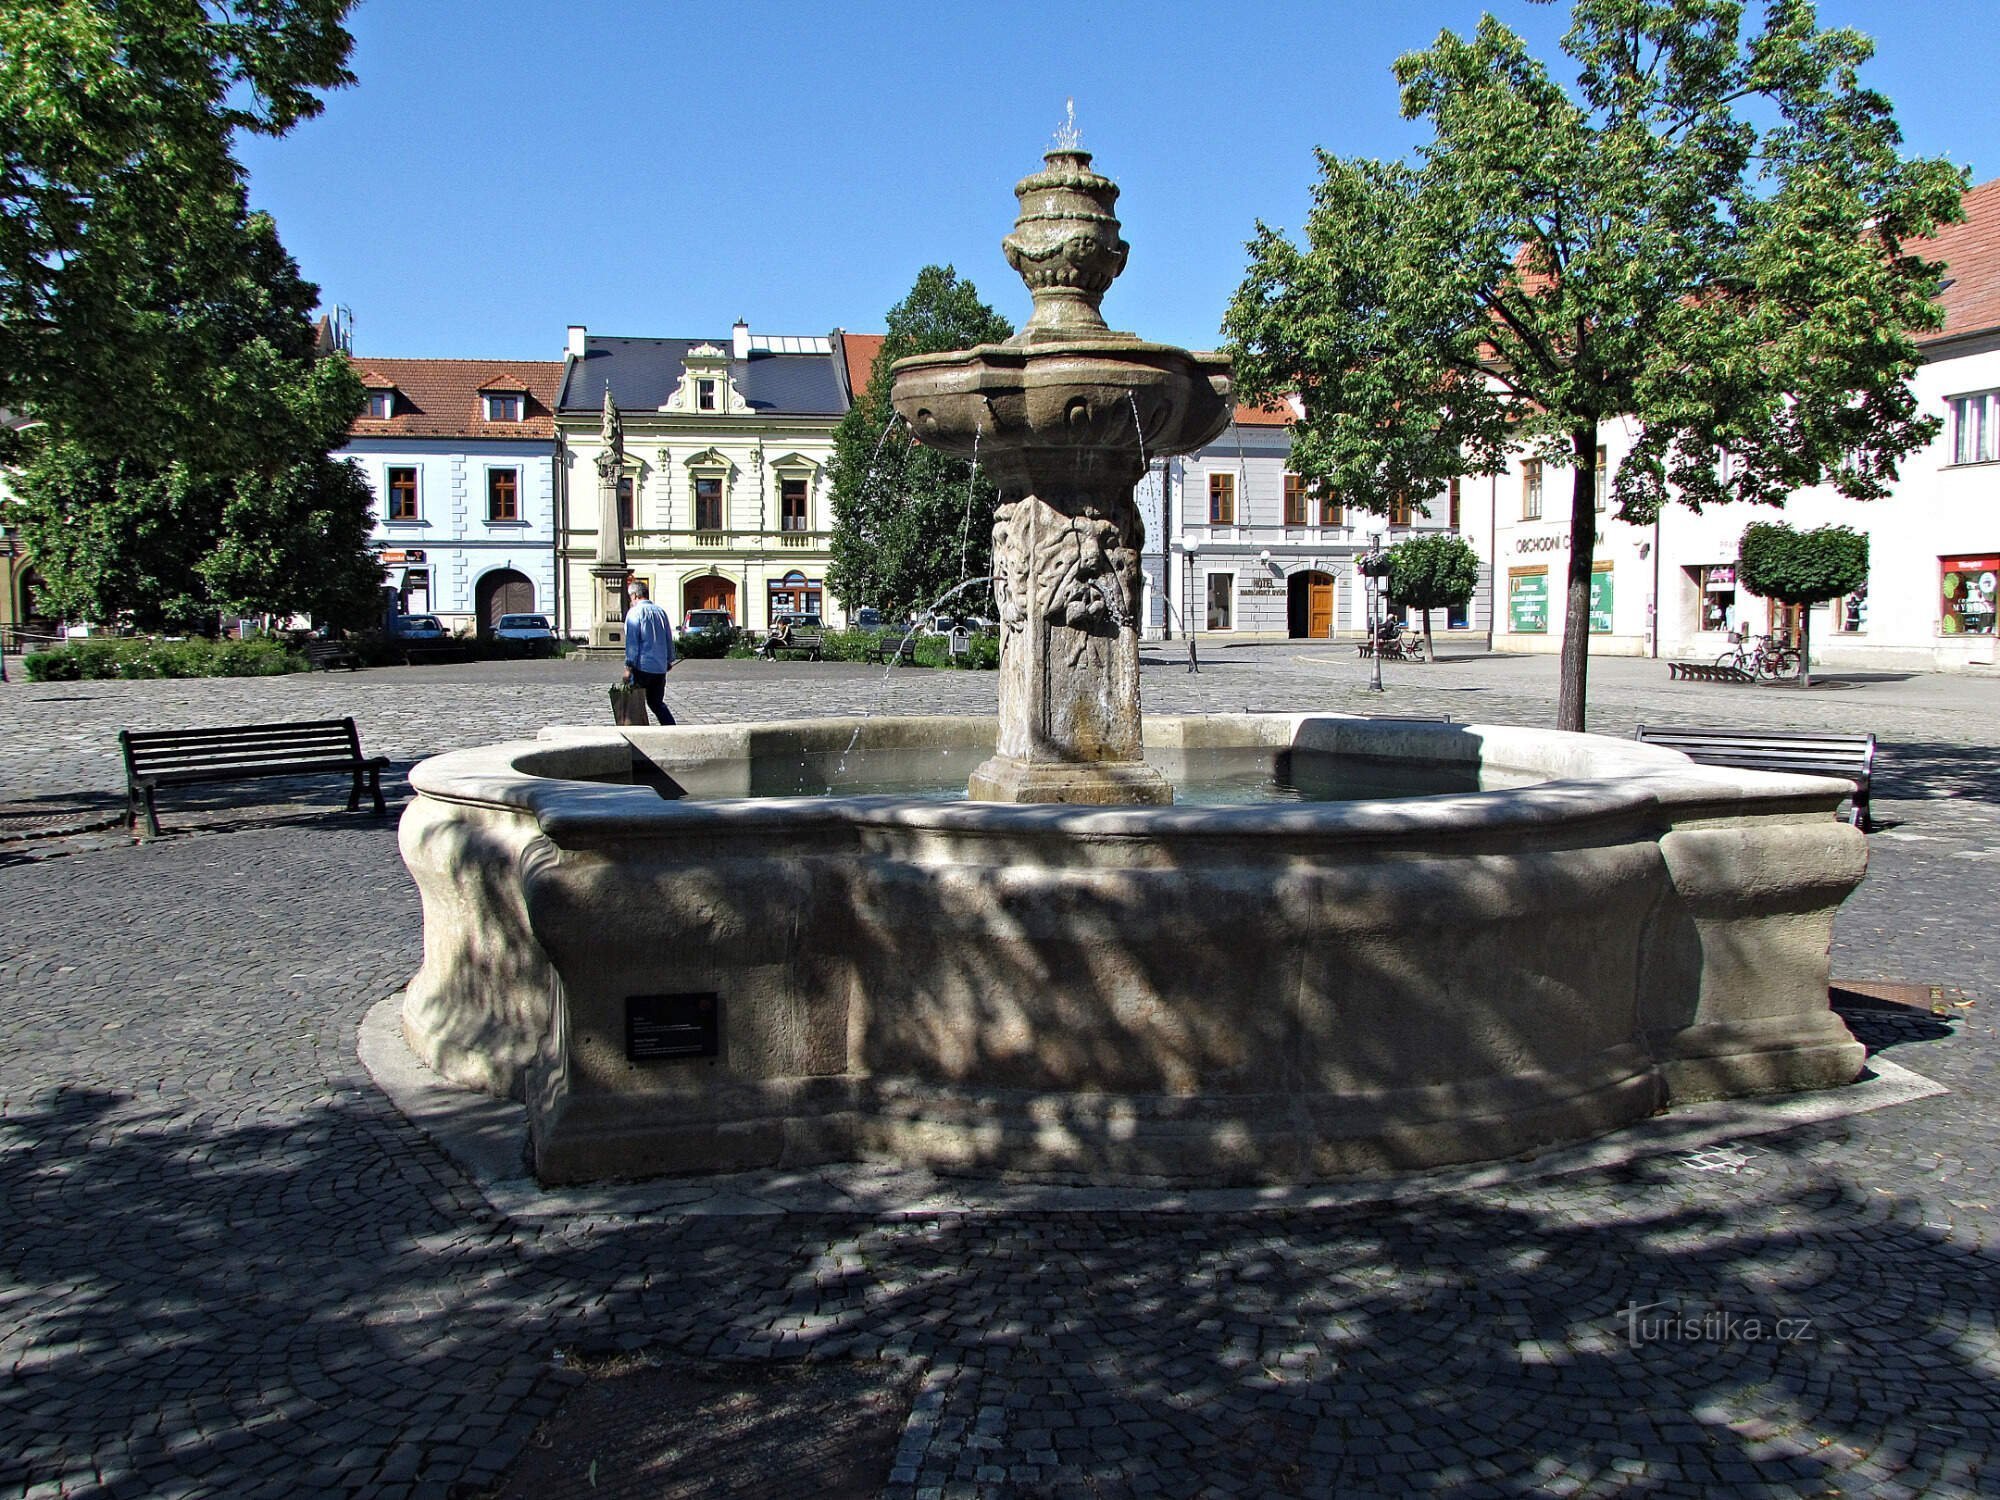 Uherské Hradiště - fountain on Mariánské náměstí